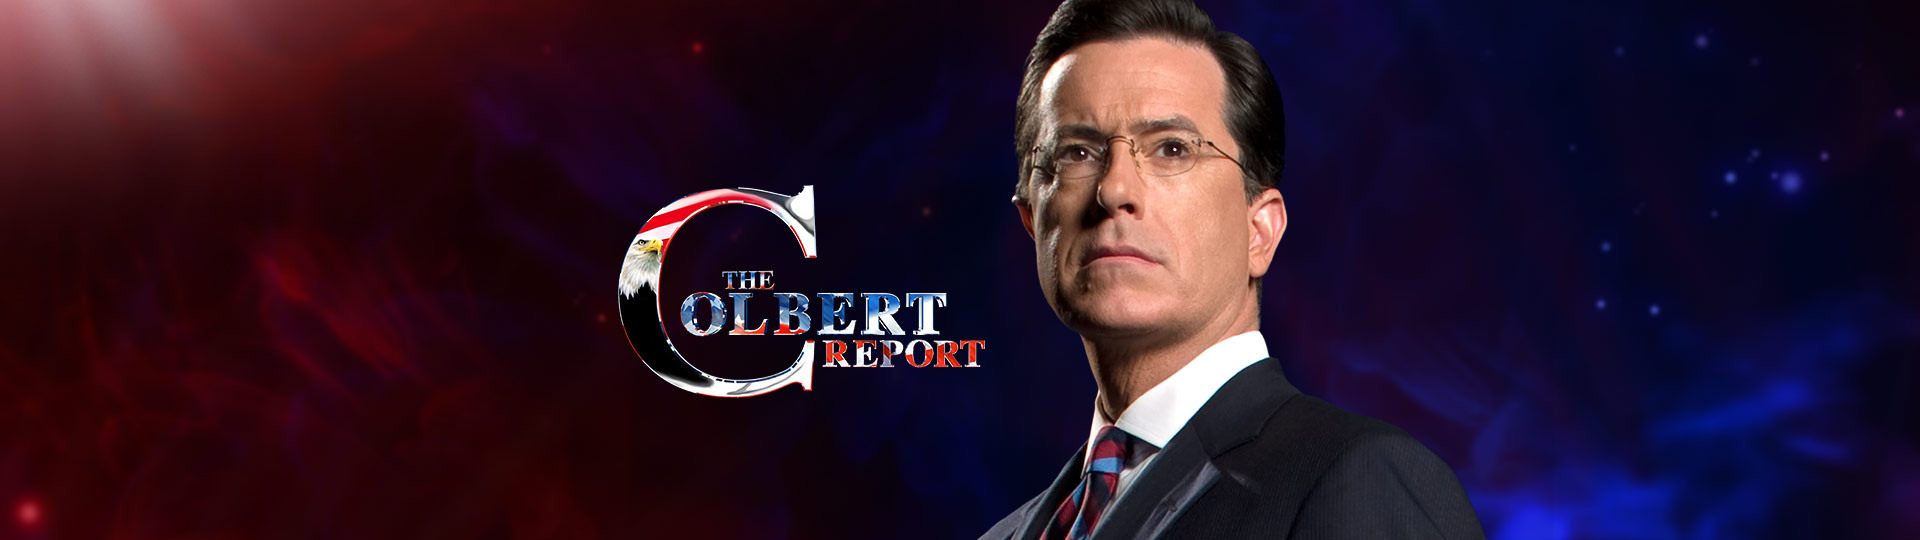 The Colbert Report #12